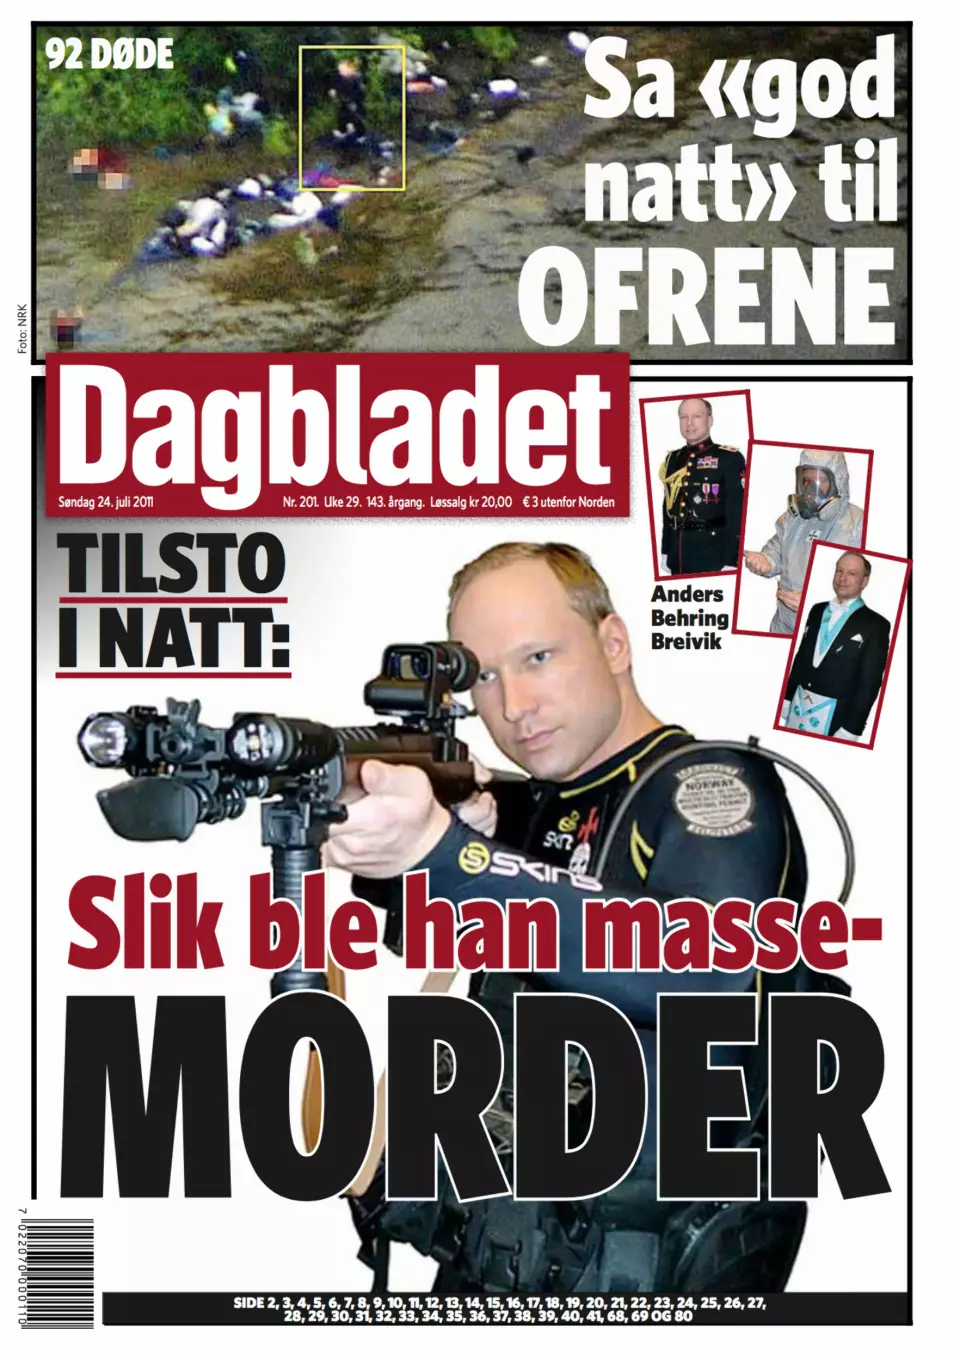 Dagbladets forside 24.juli 2011.